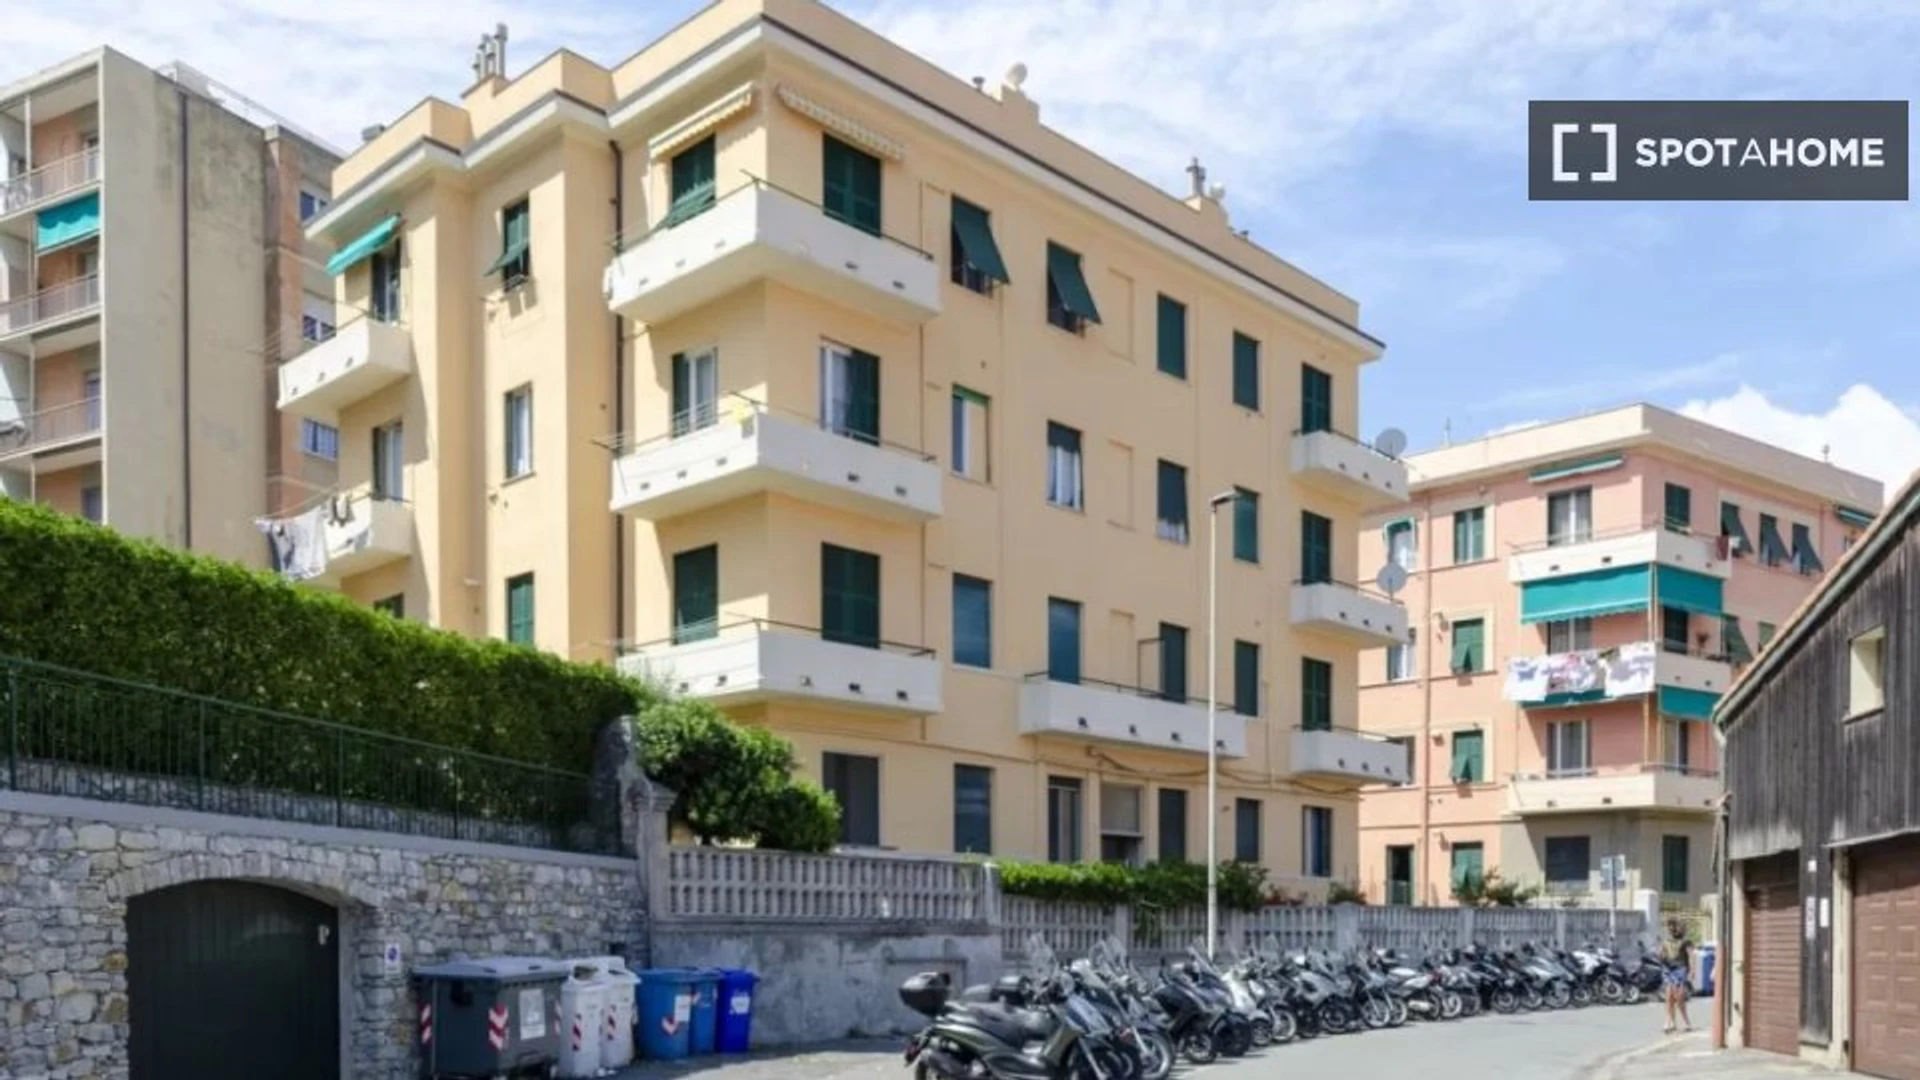 Logement situé dans le centre de Gênes